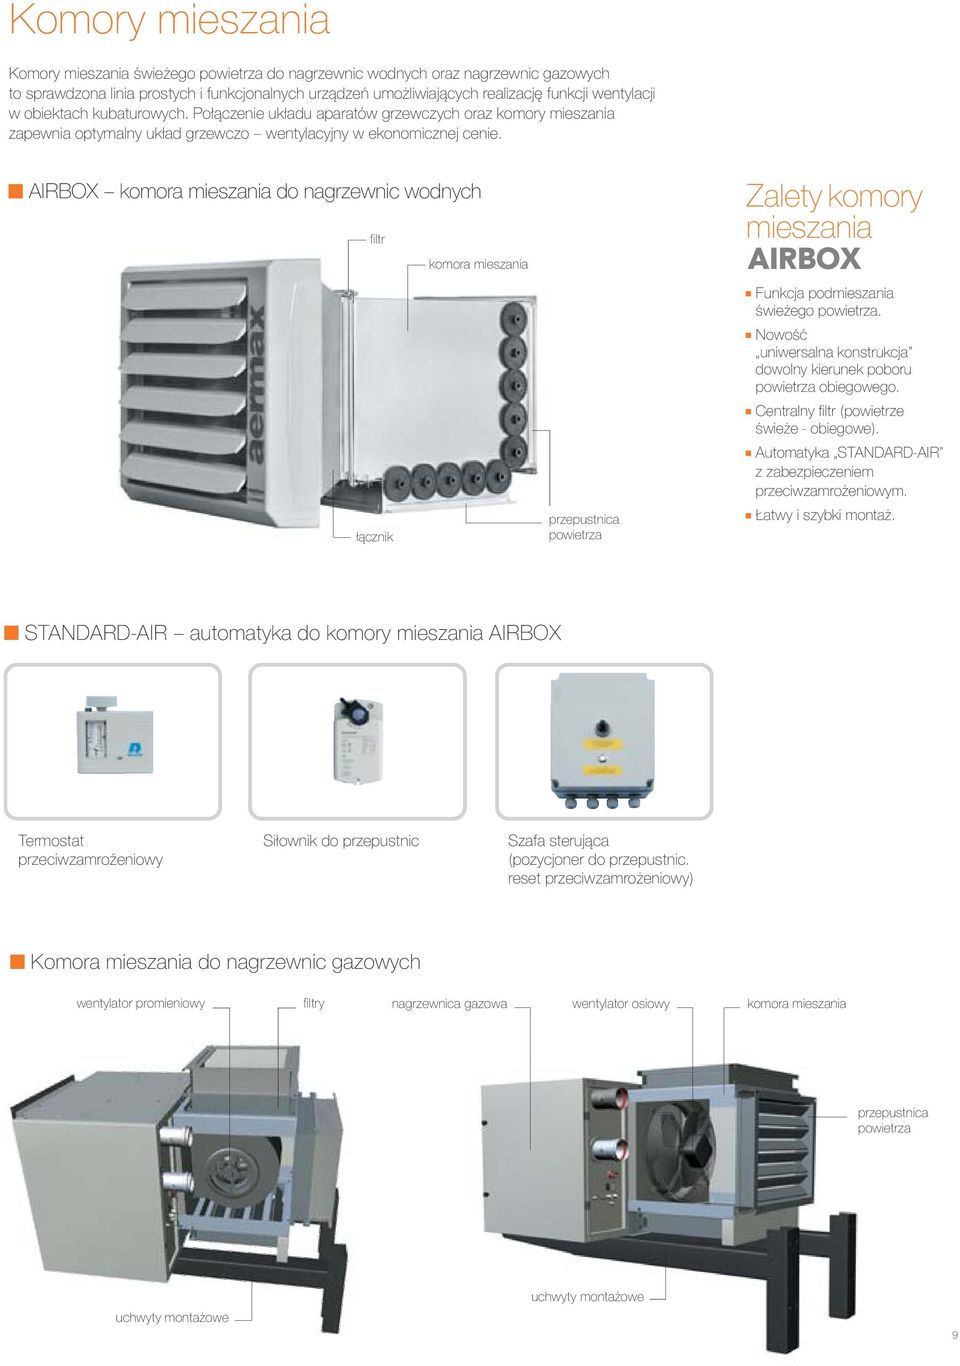 AIRBOX komora mieszania do nagrzewnic wodnych filtr komora mieszania łącznik przepustnica powietrza Zalety komory mieszania AIRBOX Funkcja podmieszania świeżego powietrza.